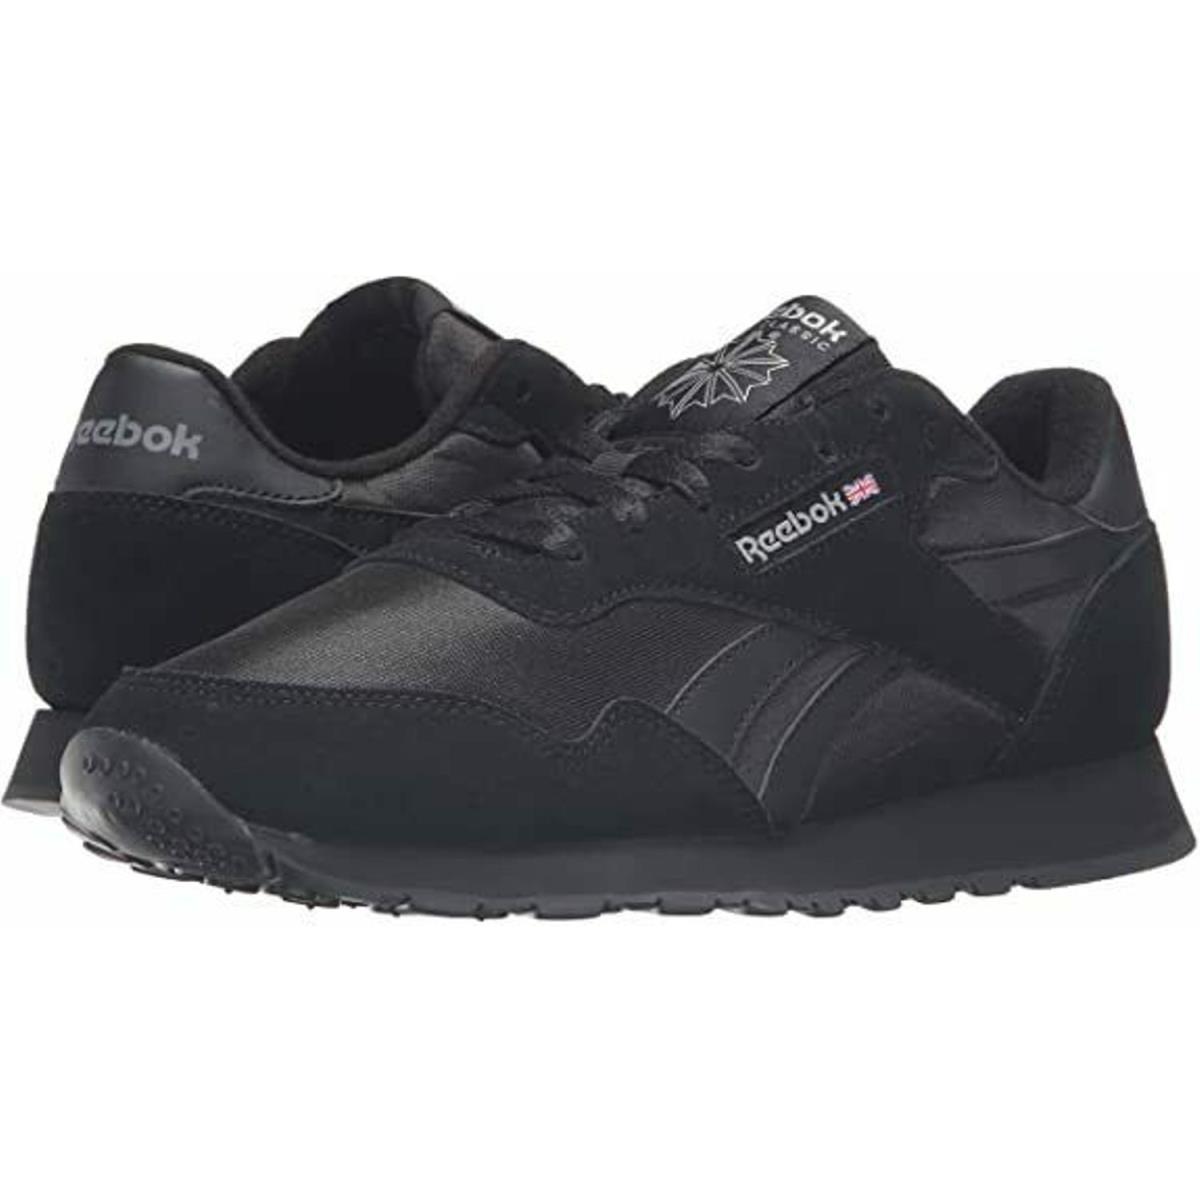 Man Reebok Royal Nylon Fashion Sneaker Shoe BD1554 Black / Black